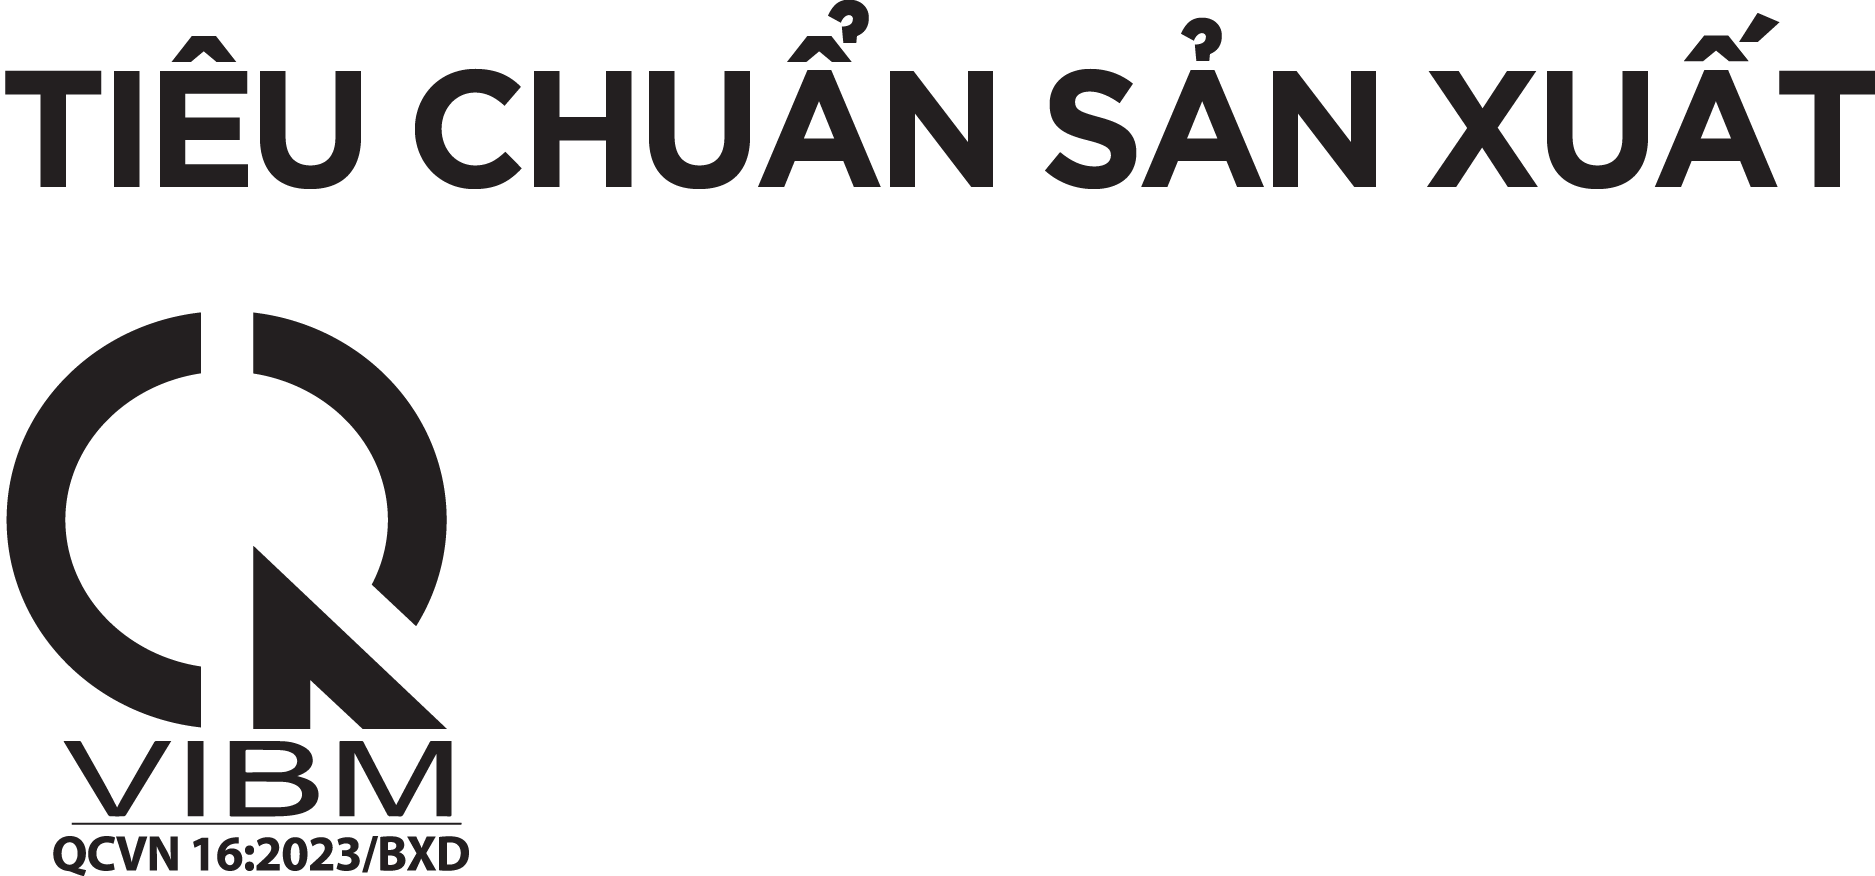 tieu-chuan-san-xuat-tam-thach-cao-vinh-tuong-gyproc-sieu-ben-x